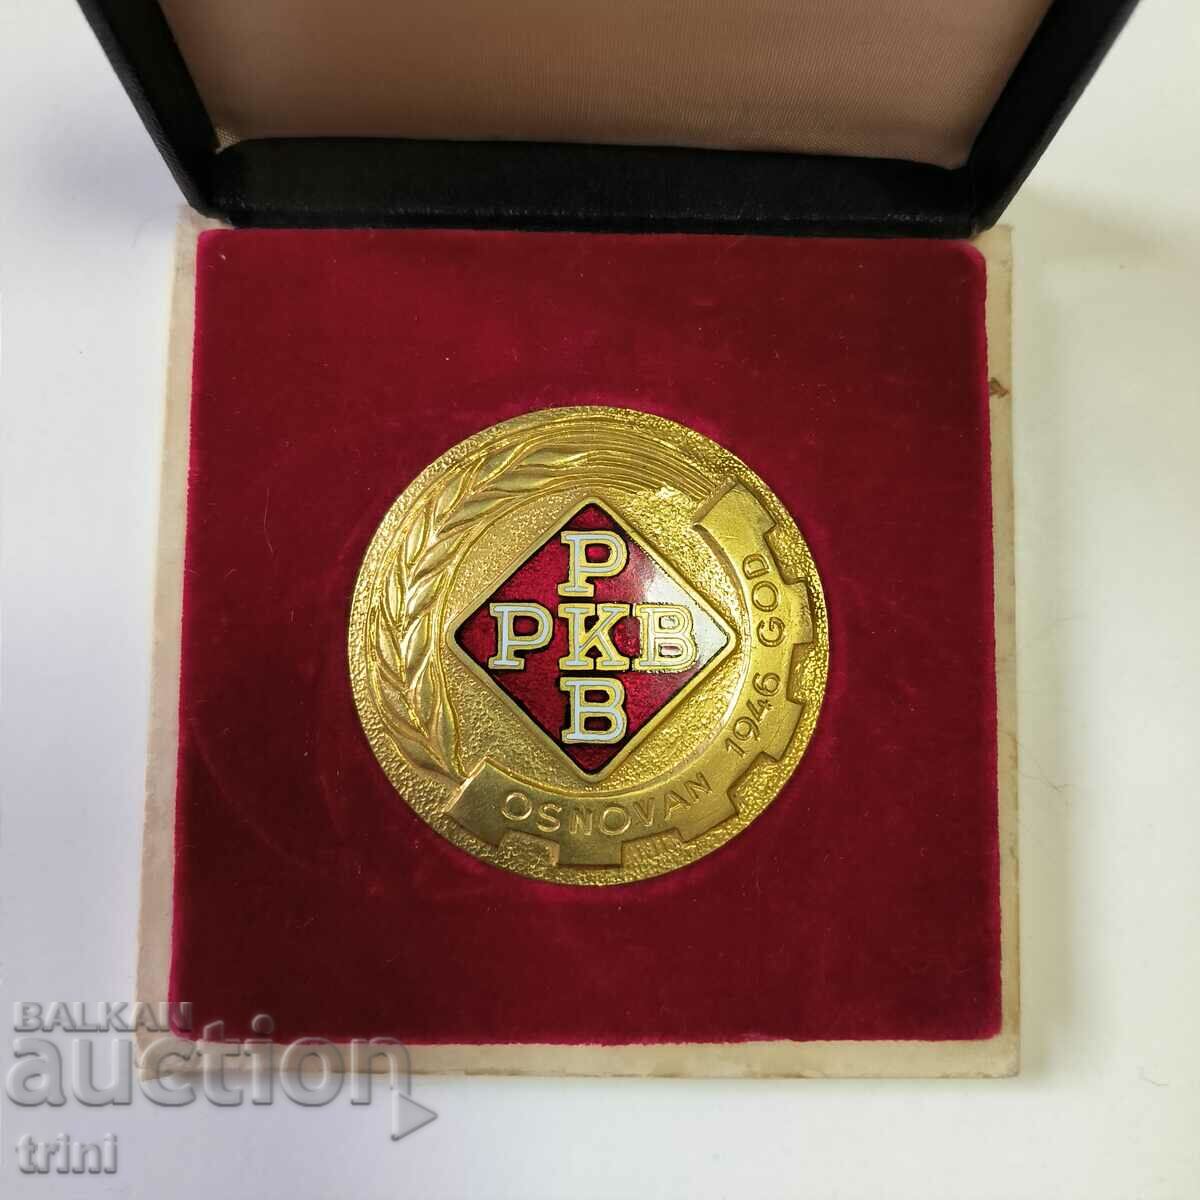 Medalia Iugoslavia pentru 20 de ani de serviciu în RKB cu număr